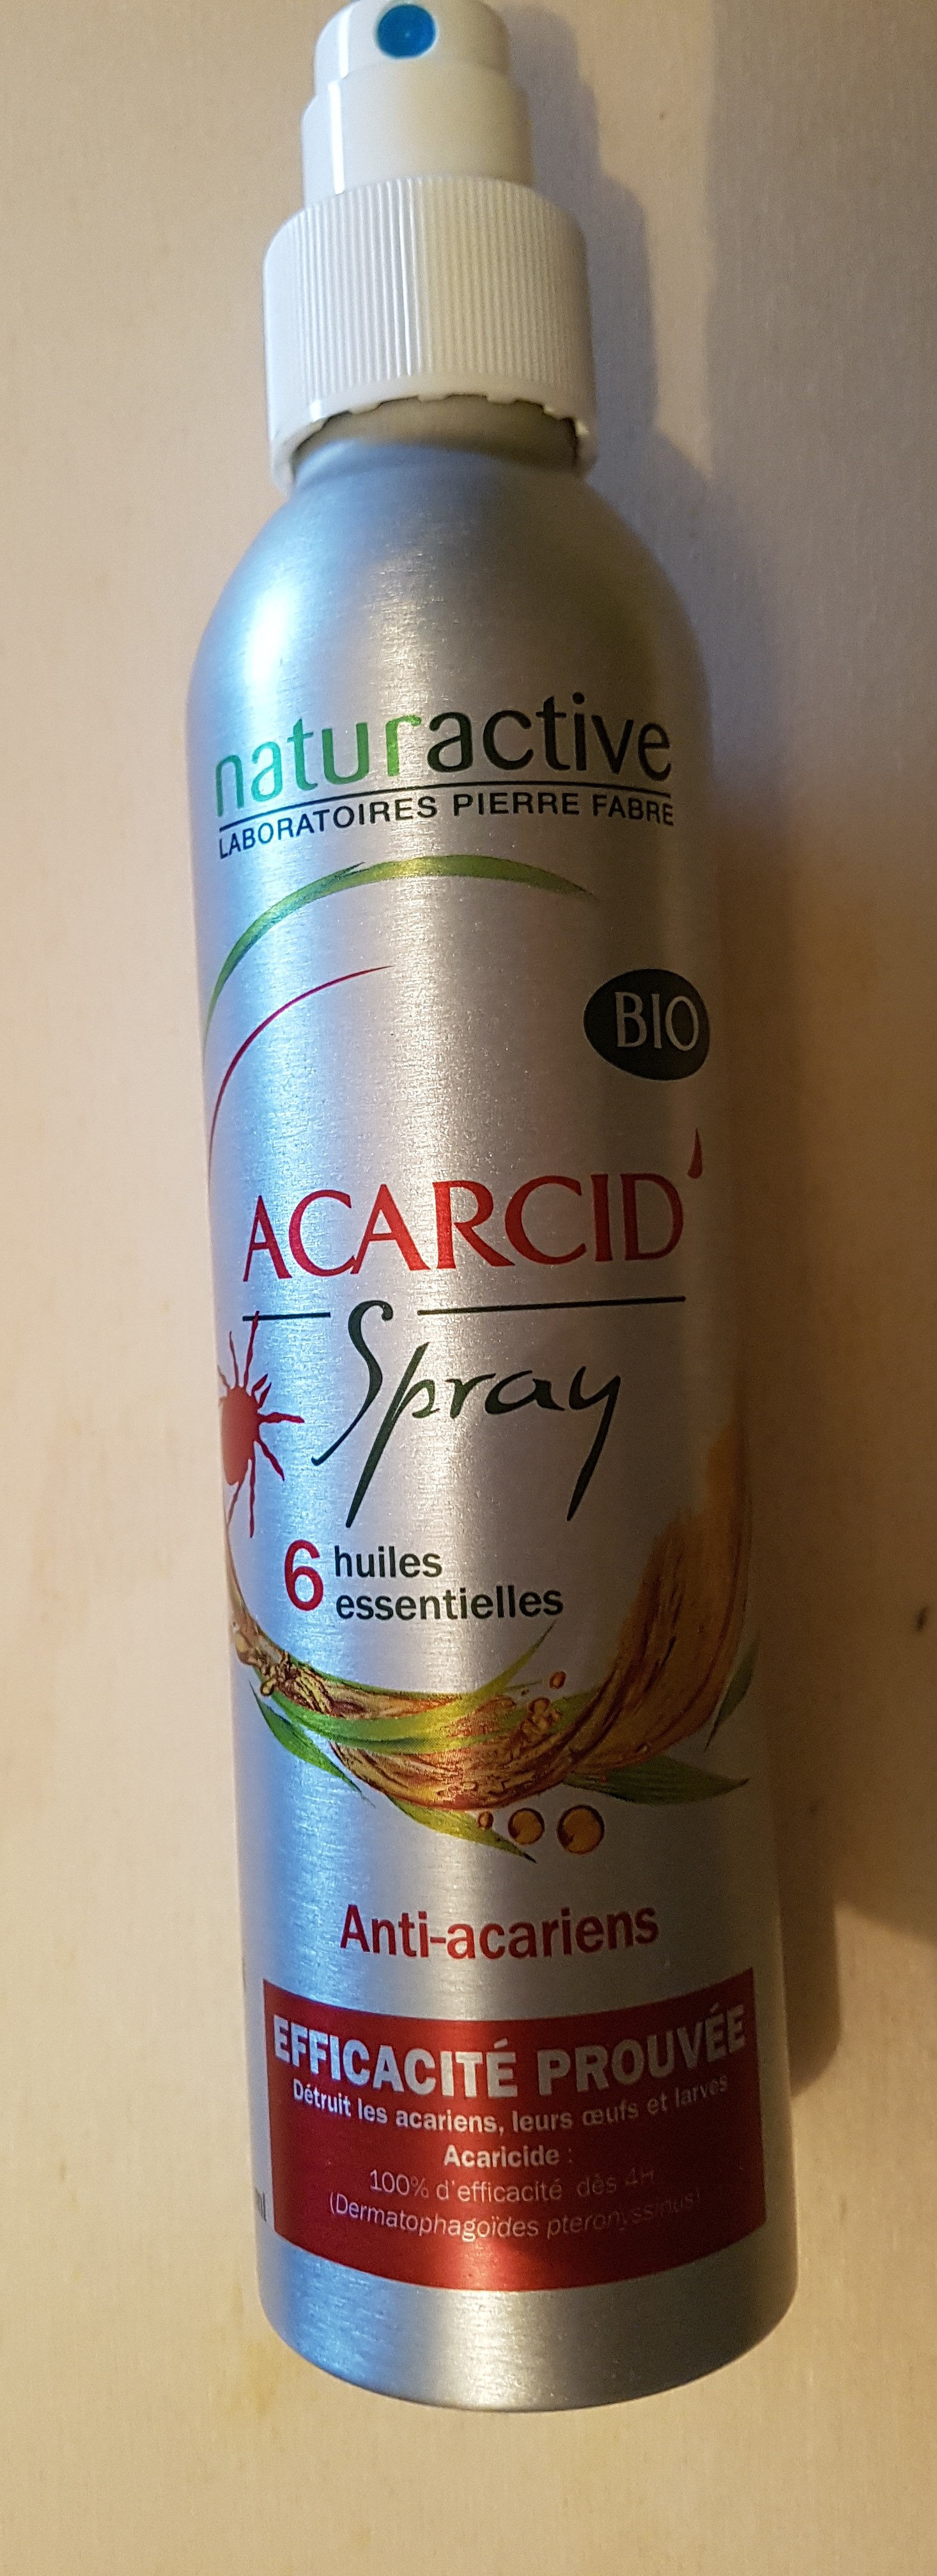 Acaricid' spray - Product - fr